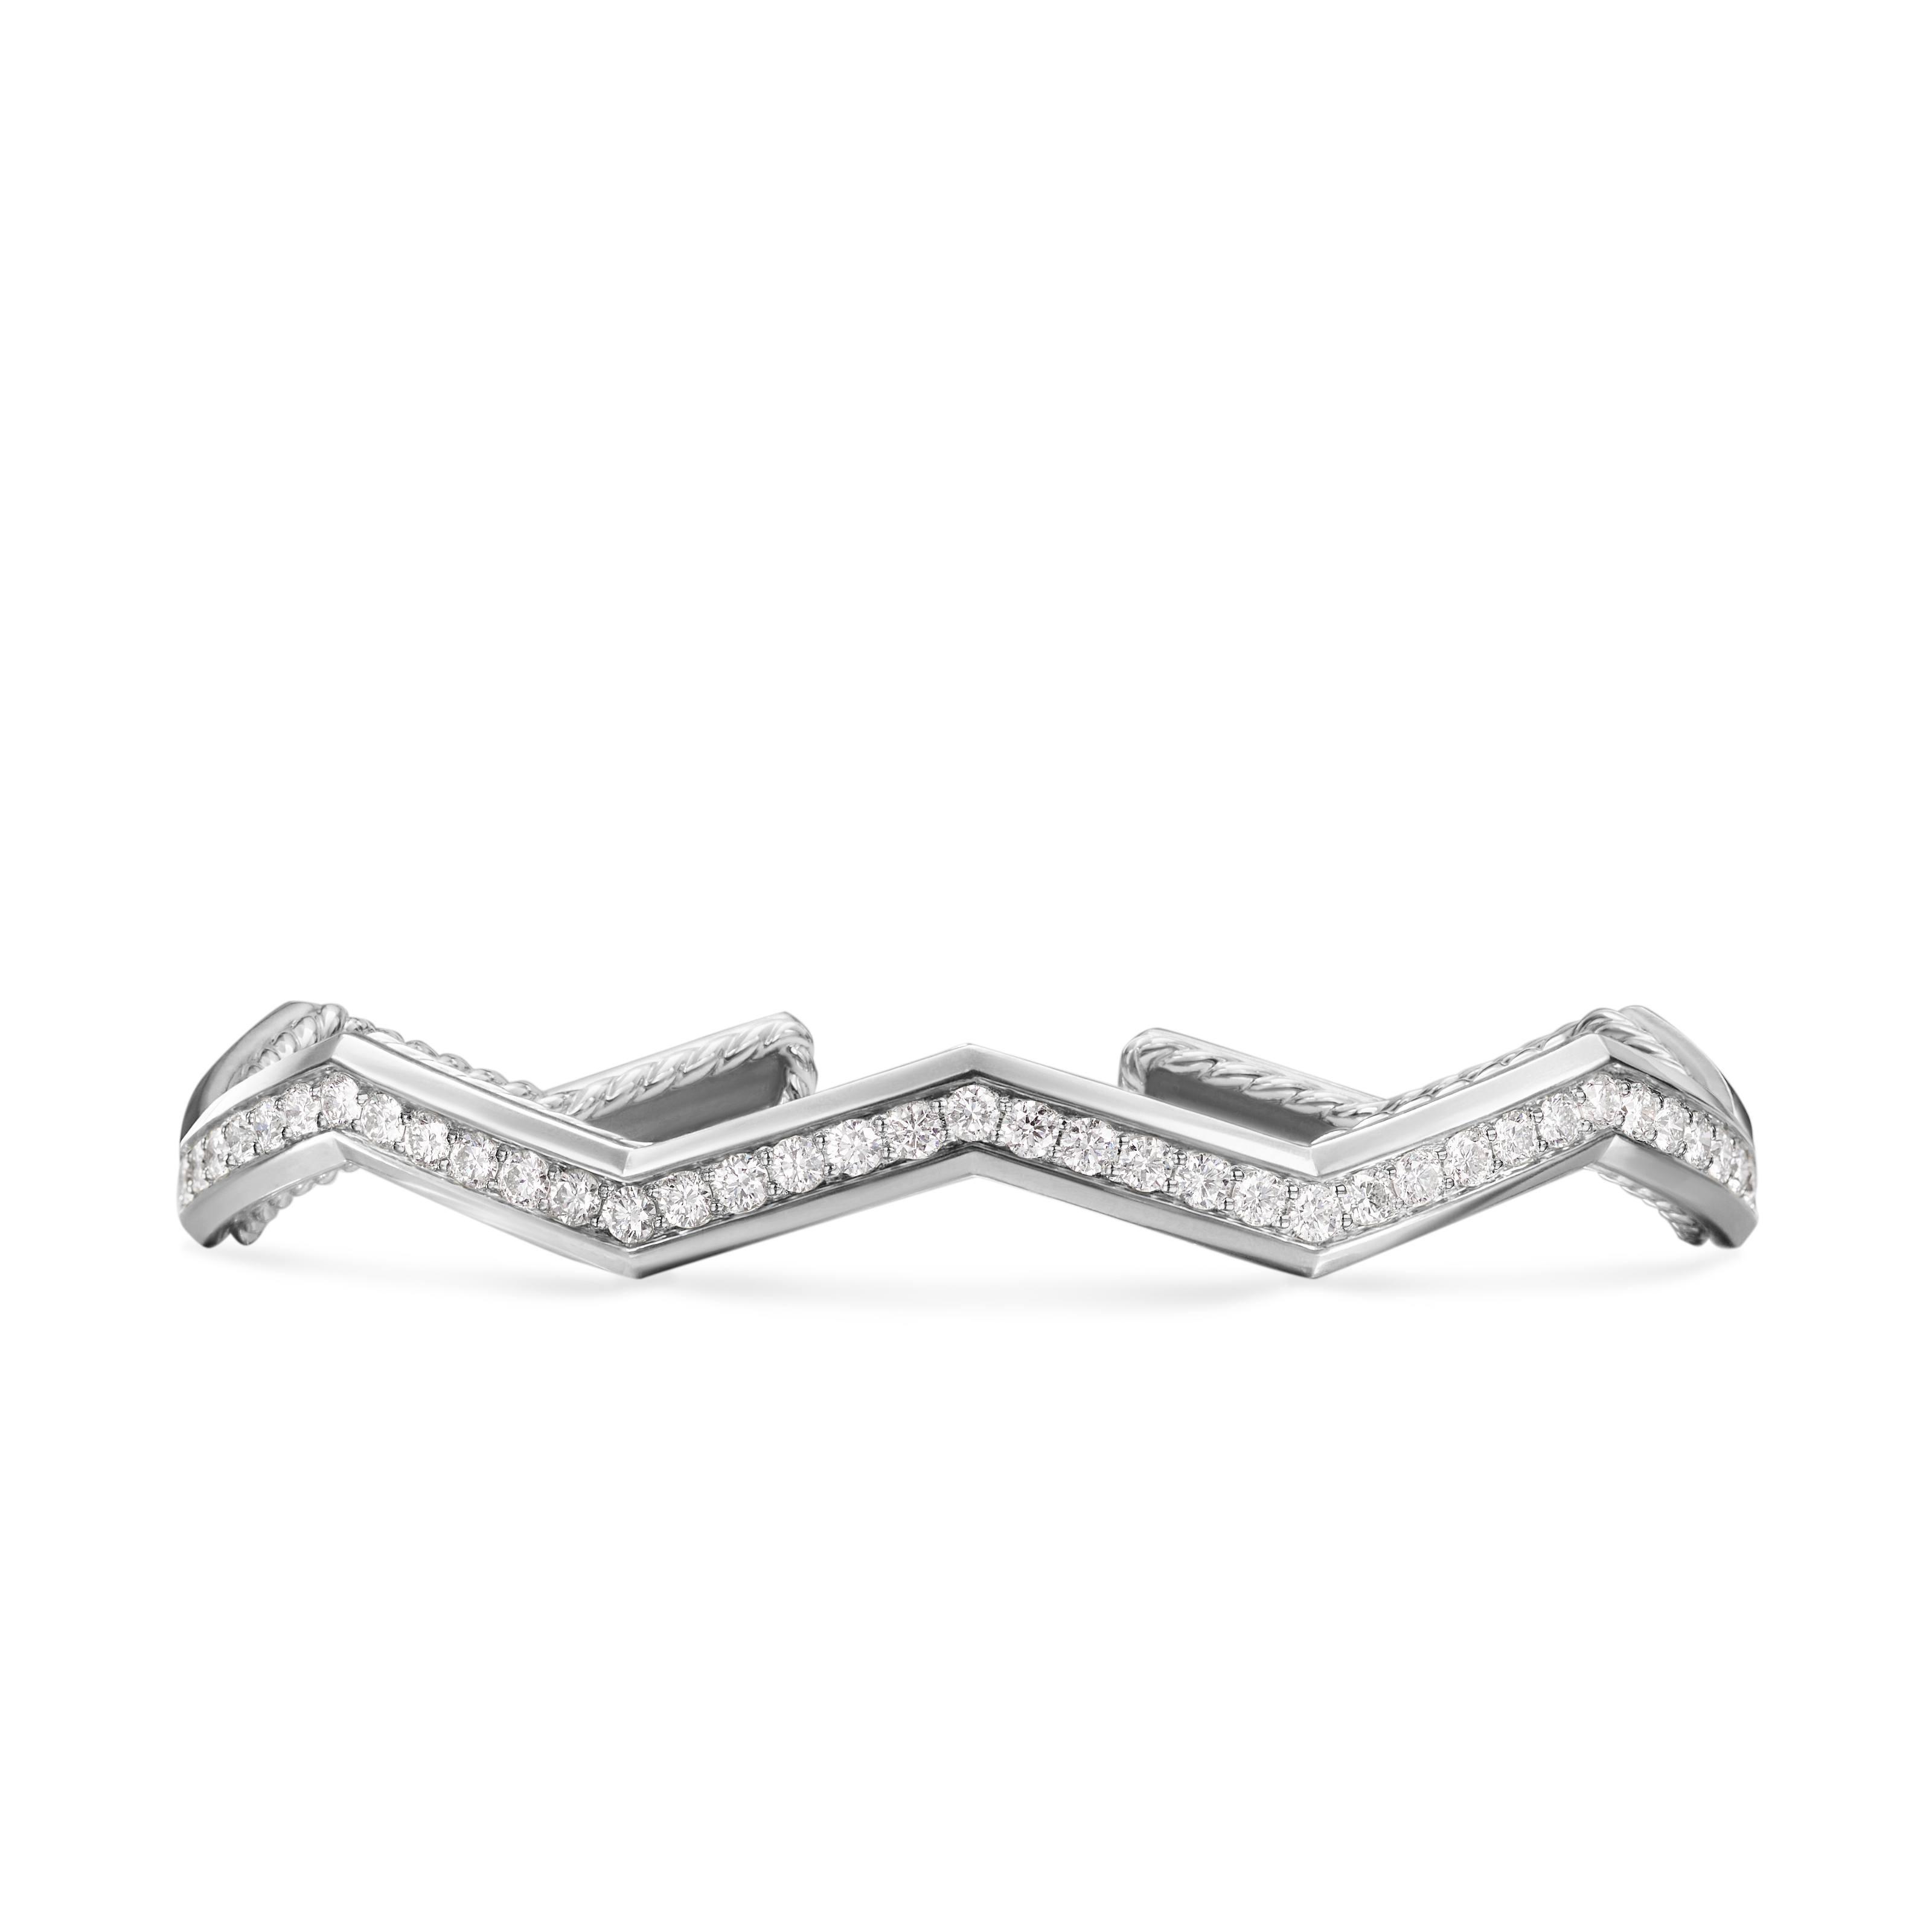 David Yurman Zig Zag Stax Sterling Silver Cuff Bracelet with Diamonds